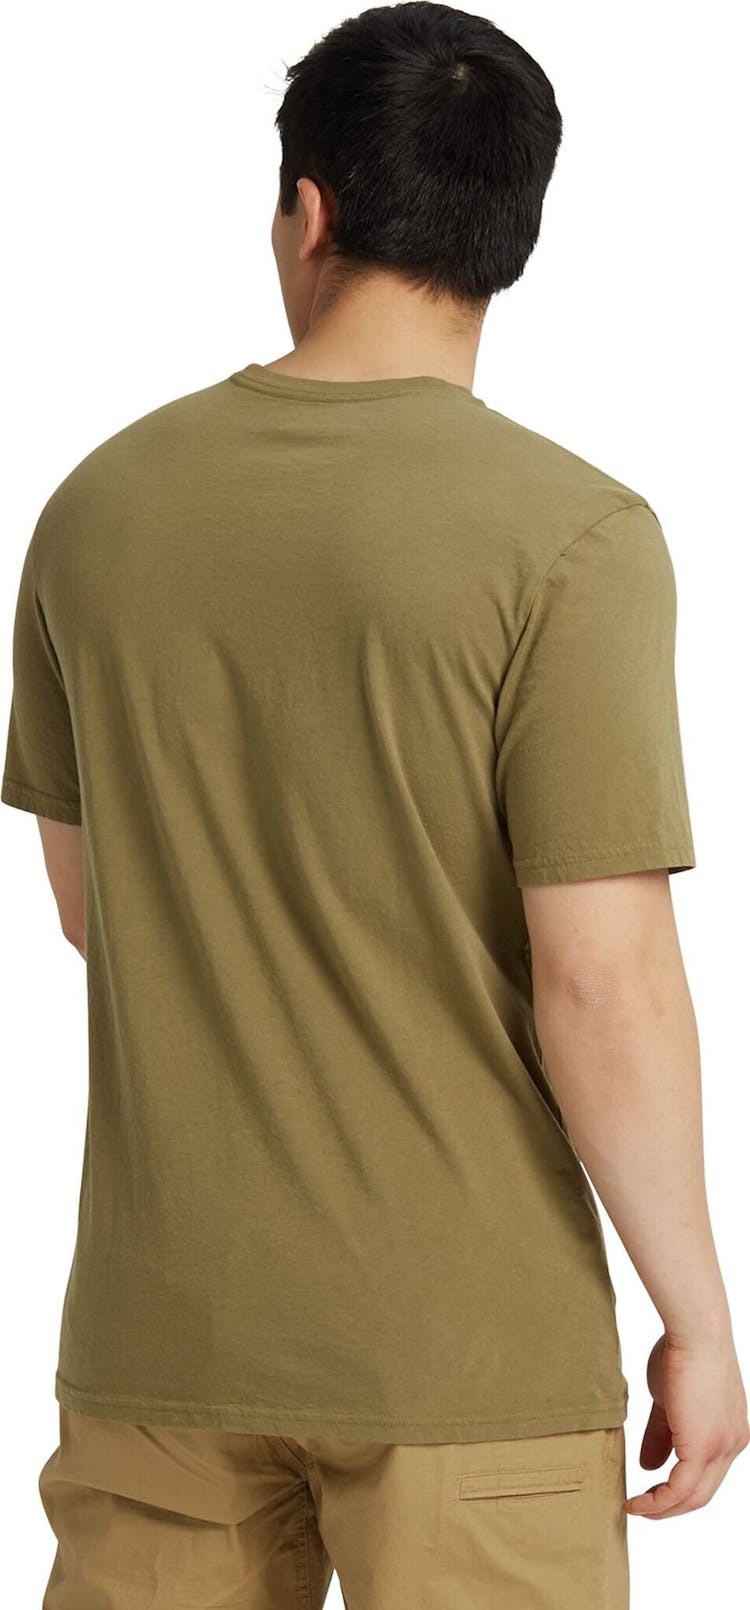 Numéro de l'image de la galerie de produits 6 pour le produit T-shirt à manches courtes Colfax - Unisexe